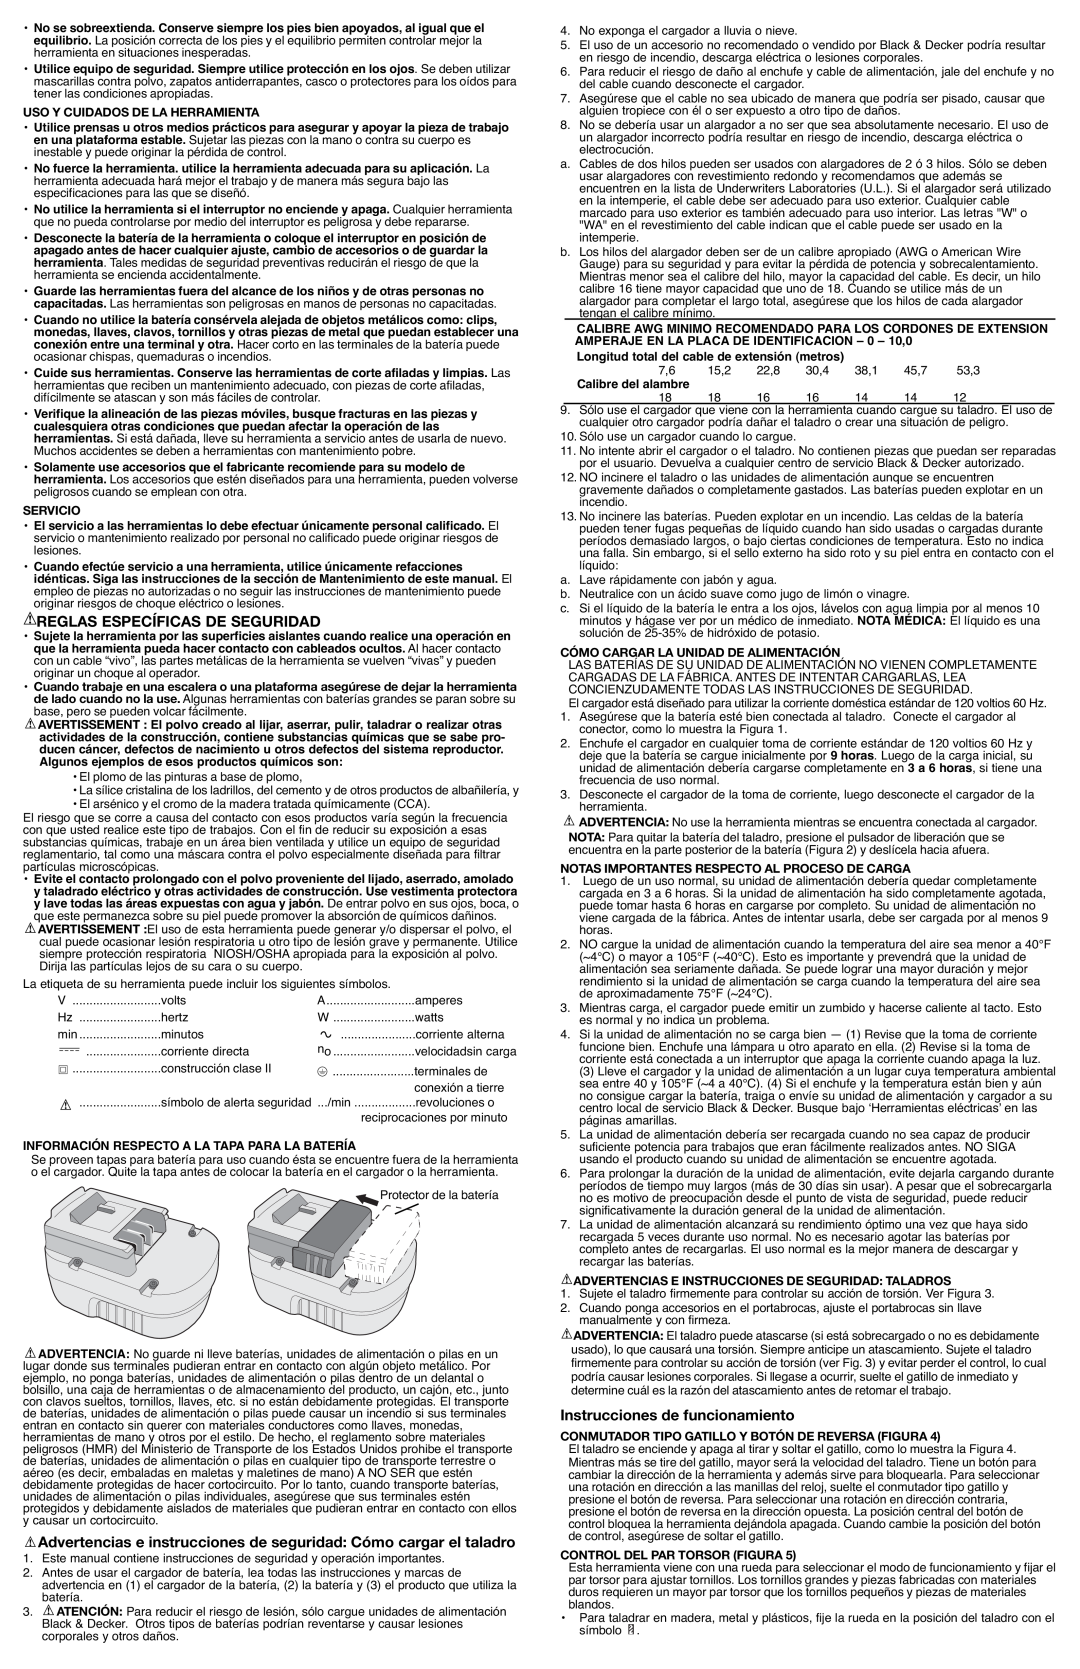 Black & Decker PS2400 Reglas Específicas De Seguridad, Advertencias e instrucciones de seguridad Cómo cargar el taladro 